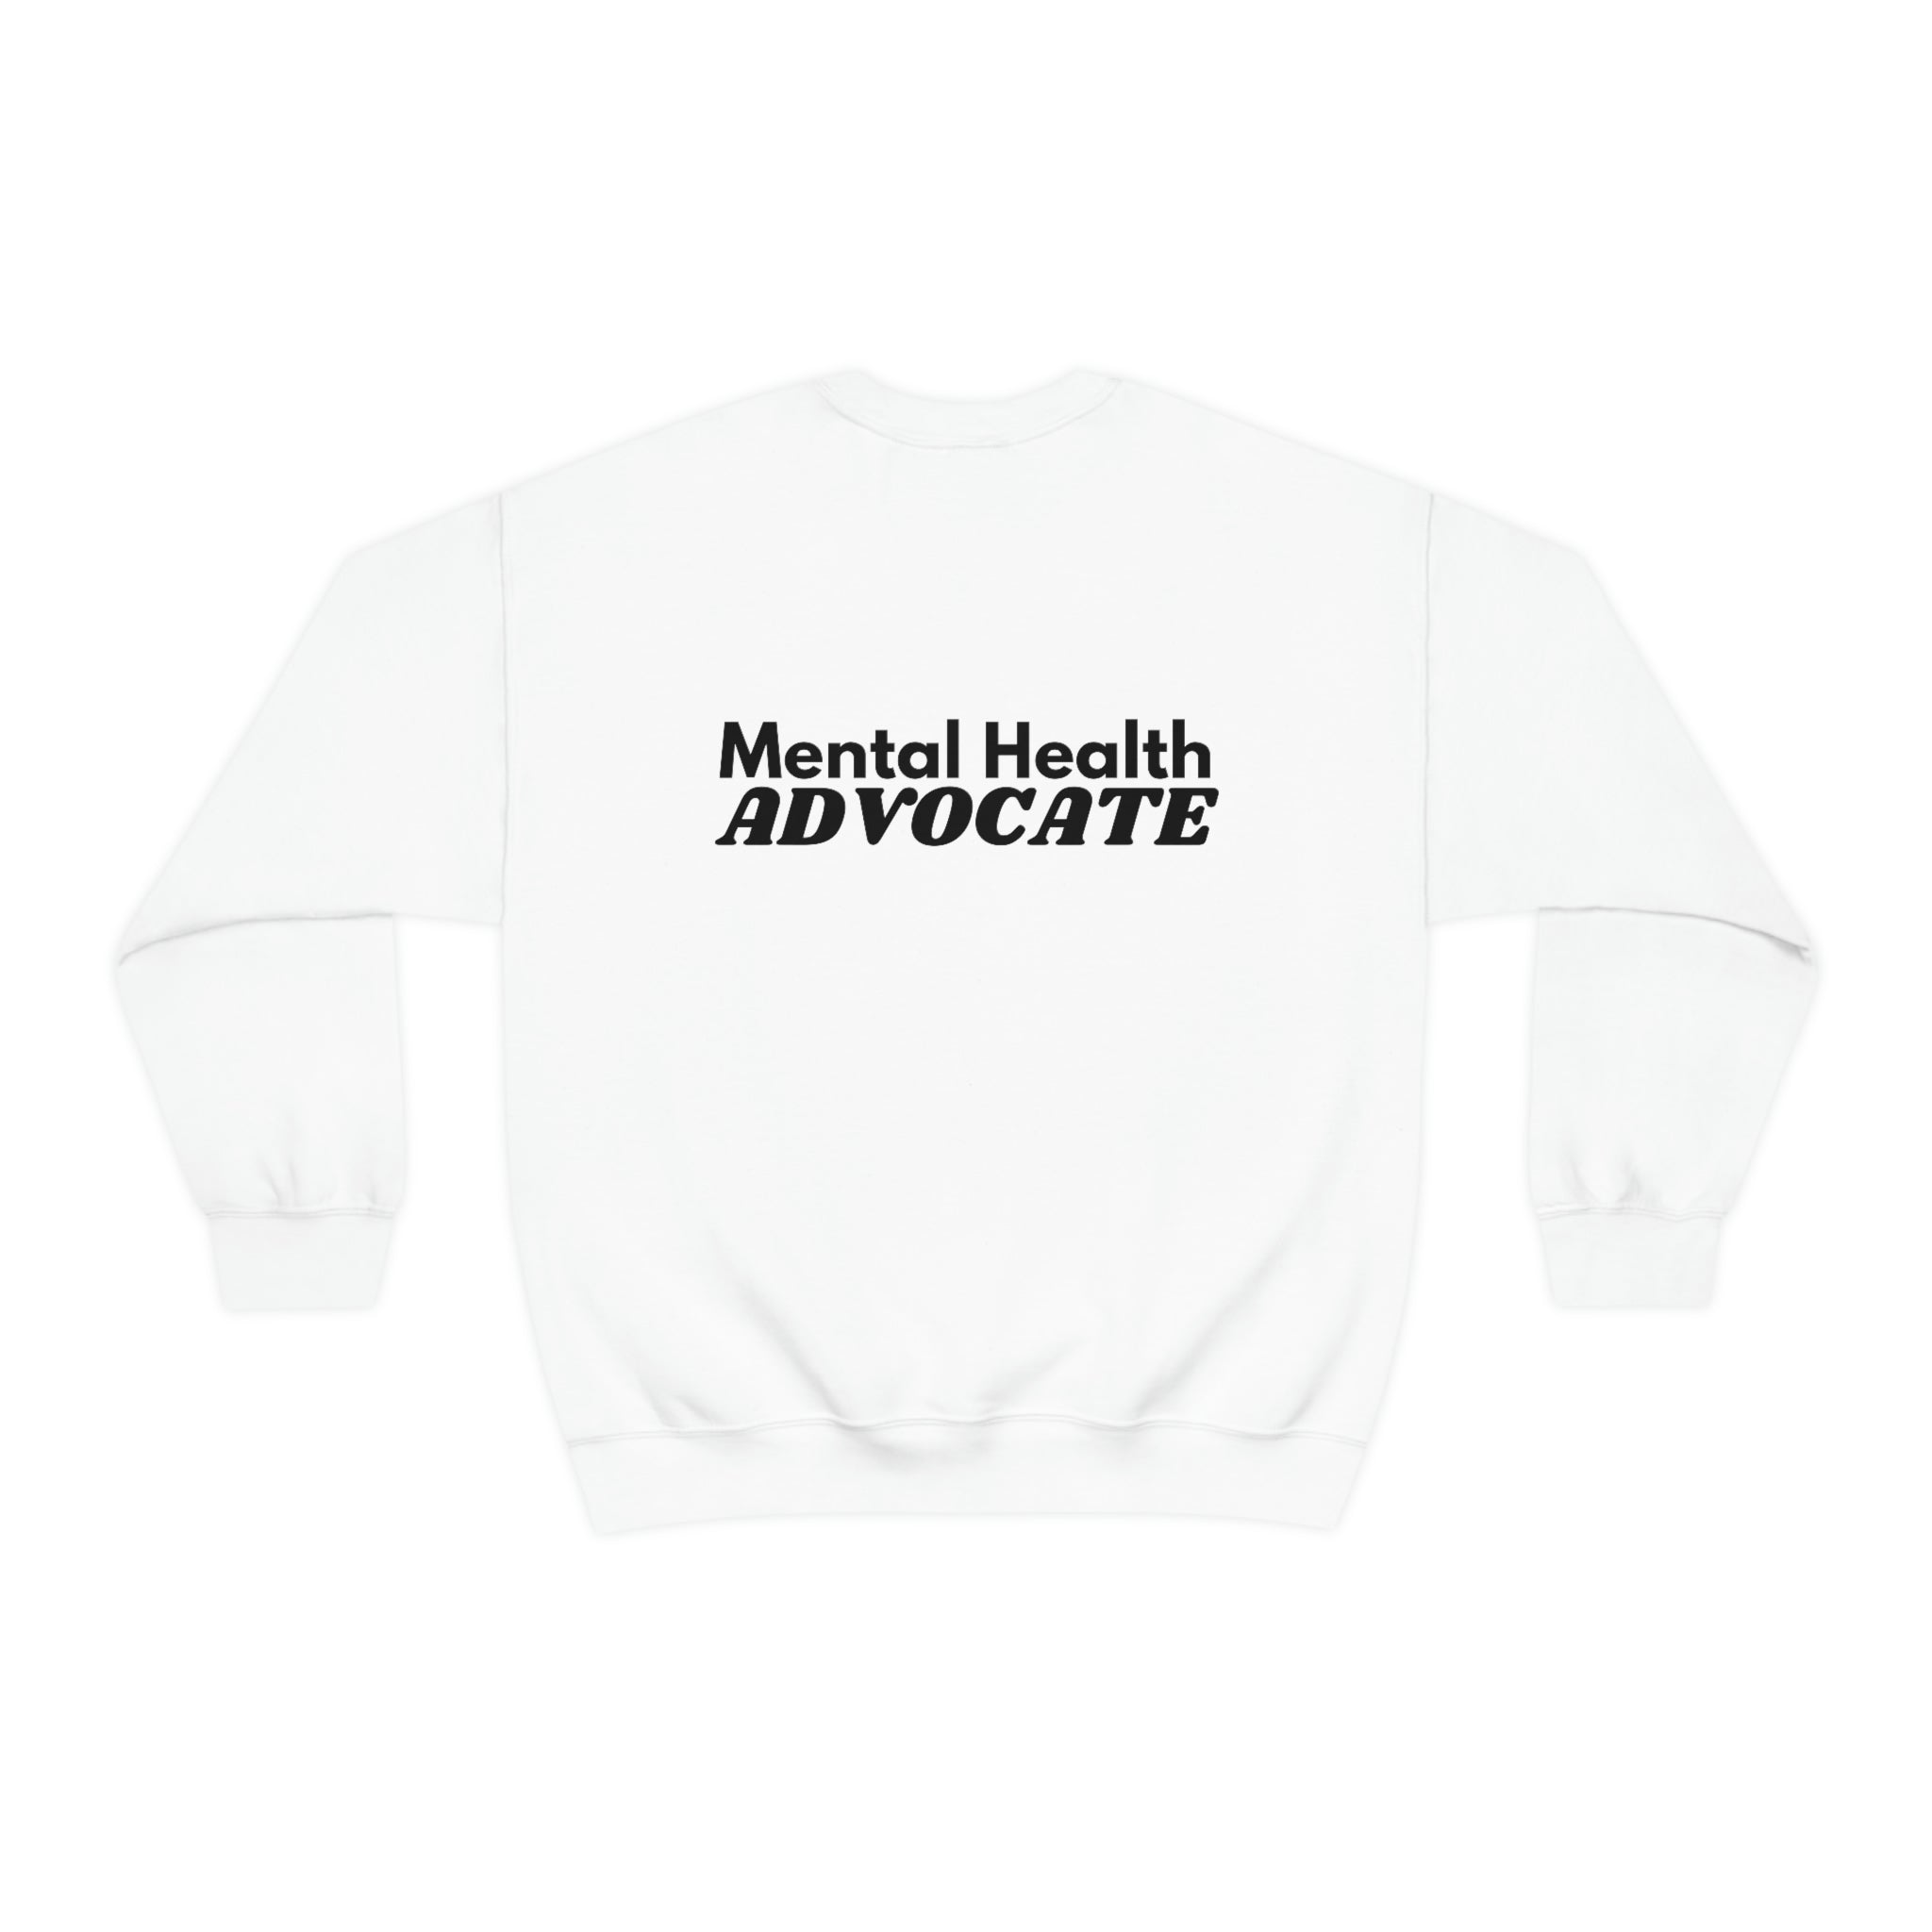 "Mental Health Advocate" Minimalist Unisex Sweatshirt